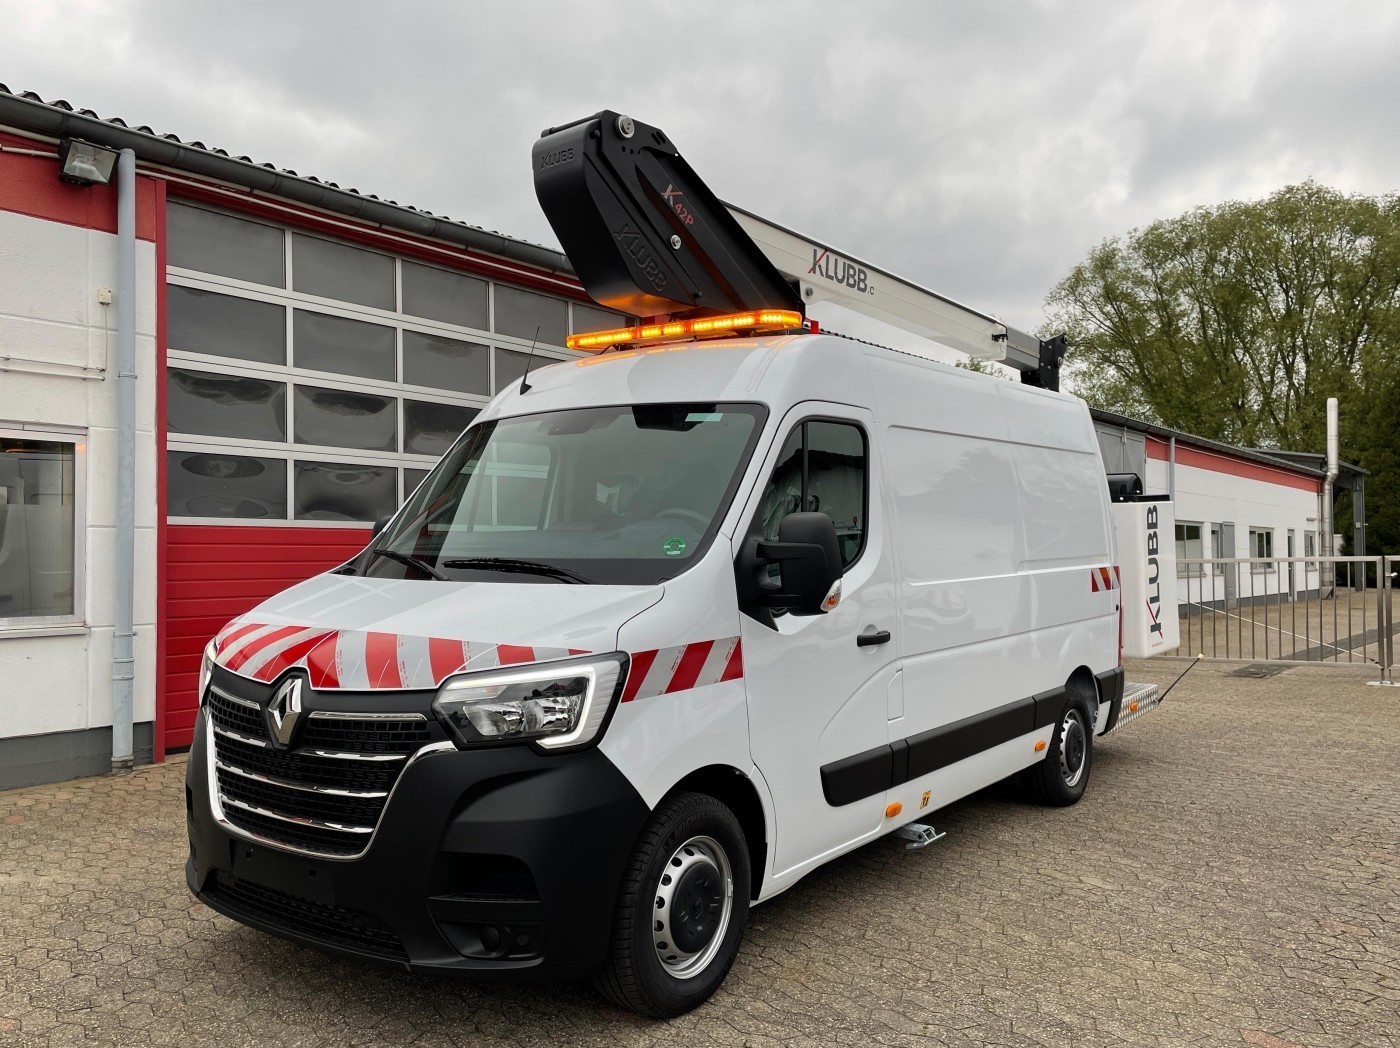 Renault - Master 145dCi van aerial work lift KLUBB K32 13m new vehicle